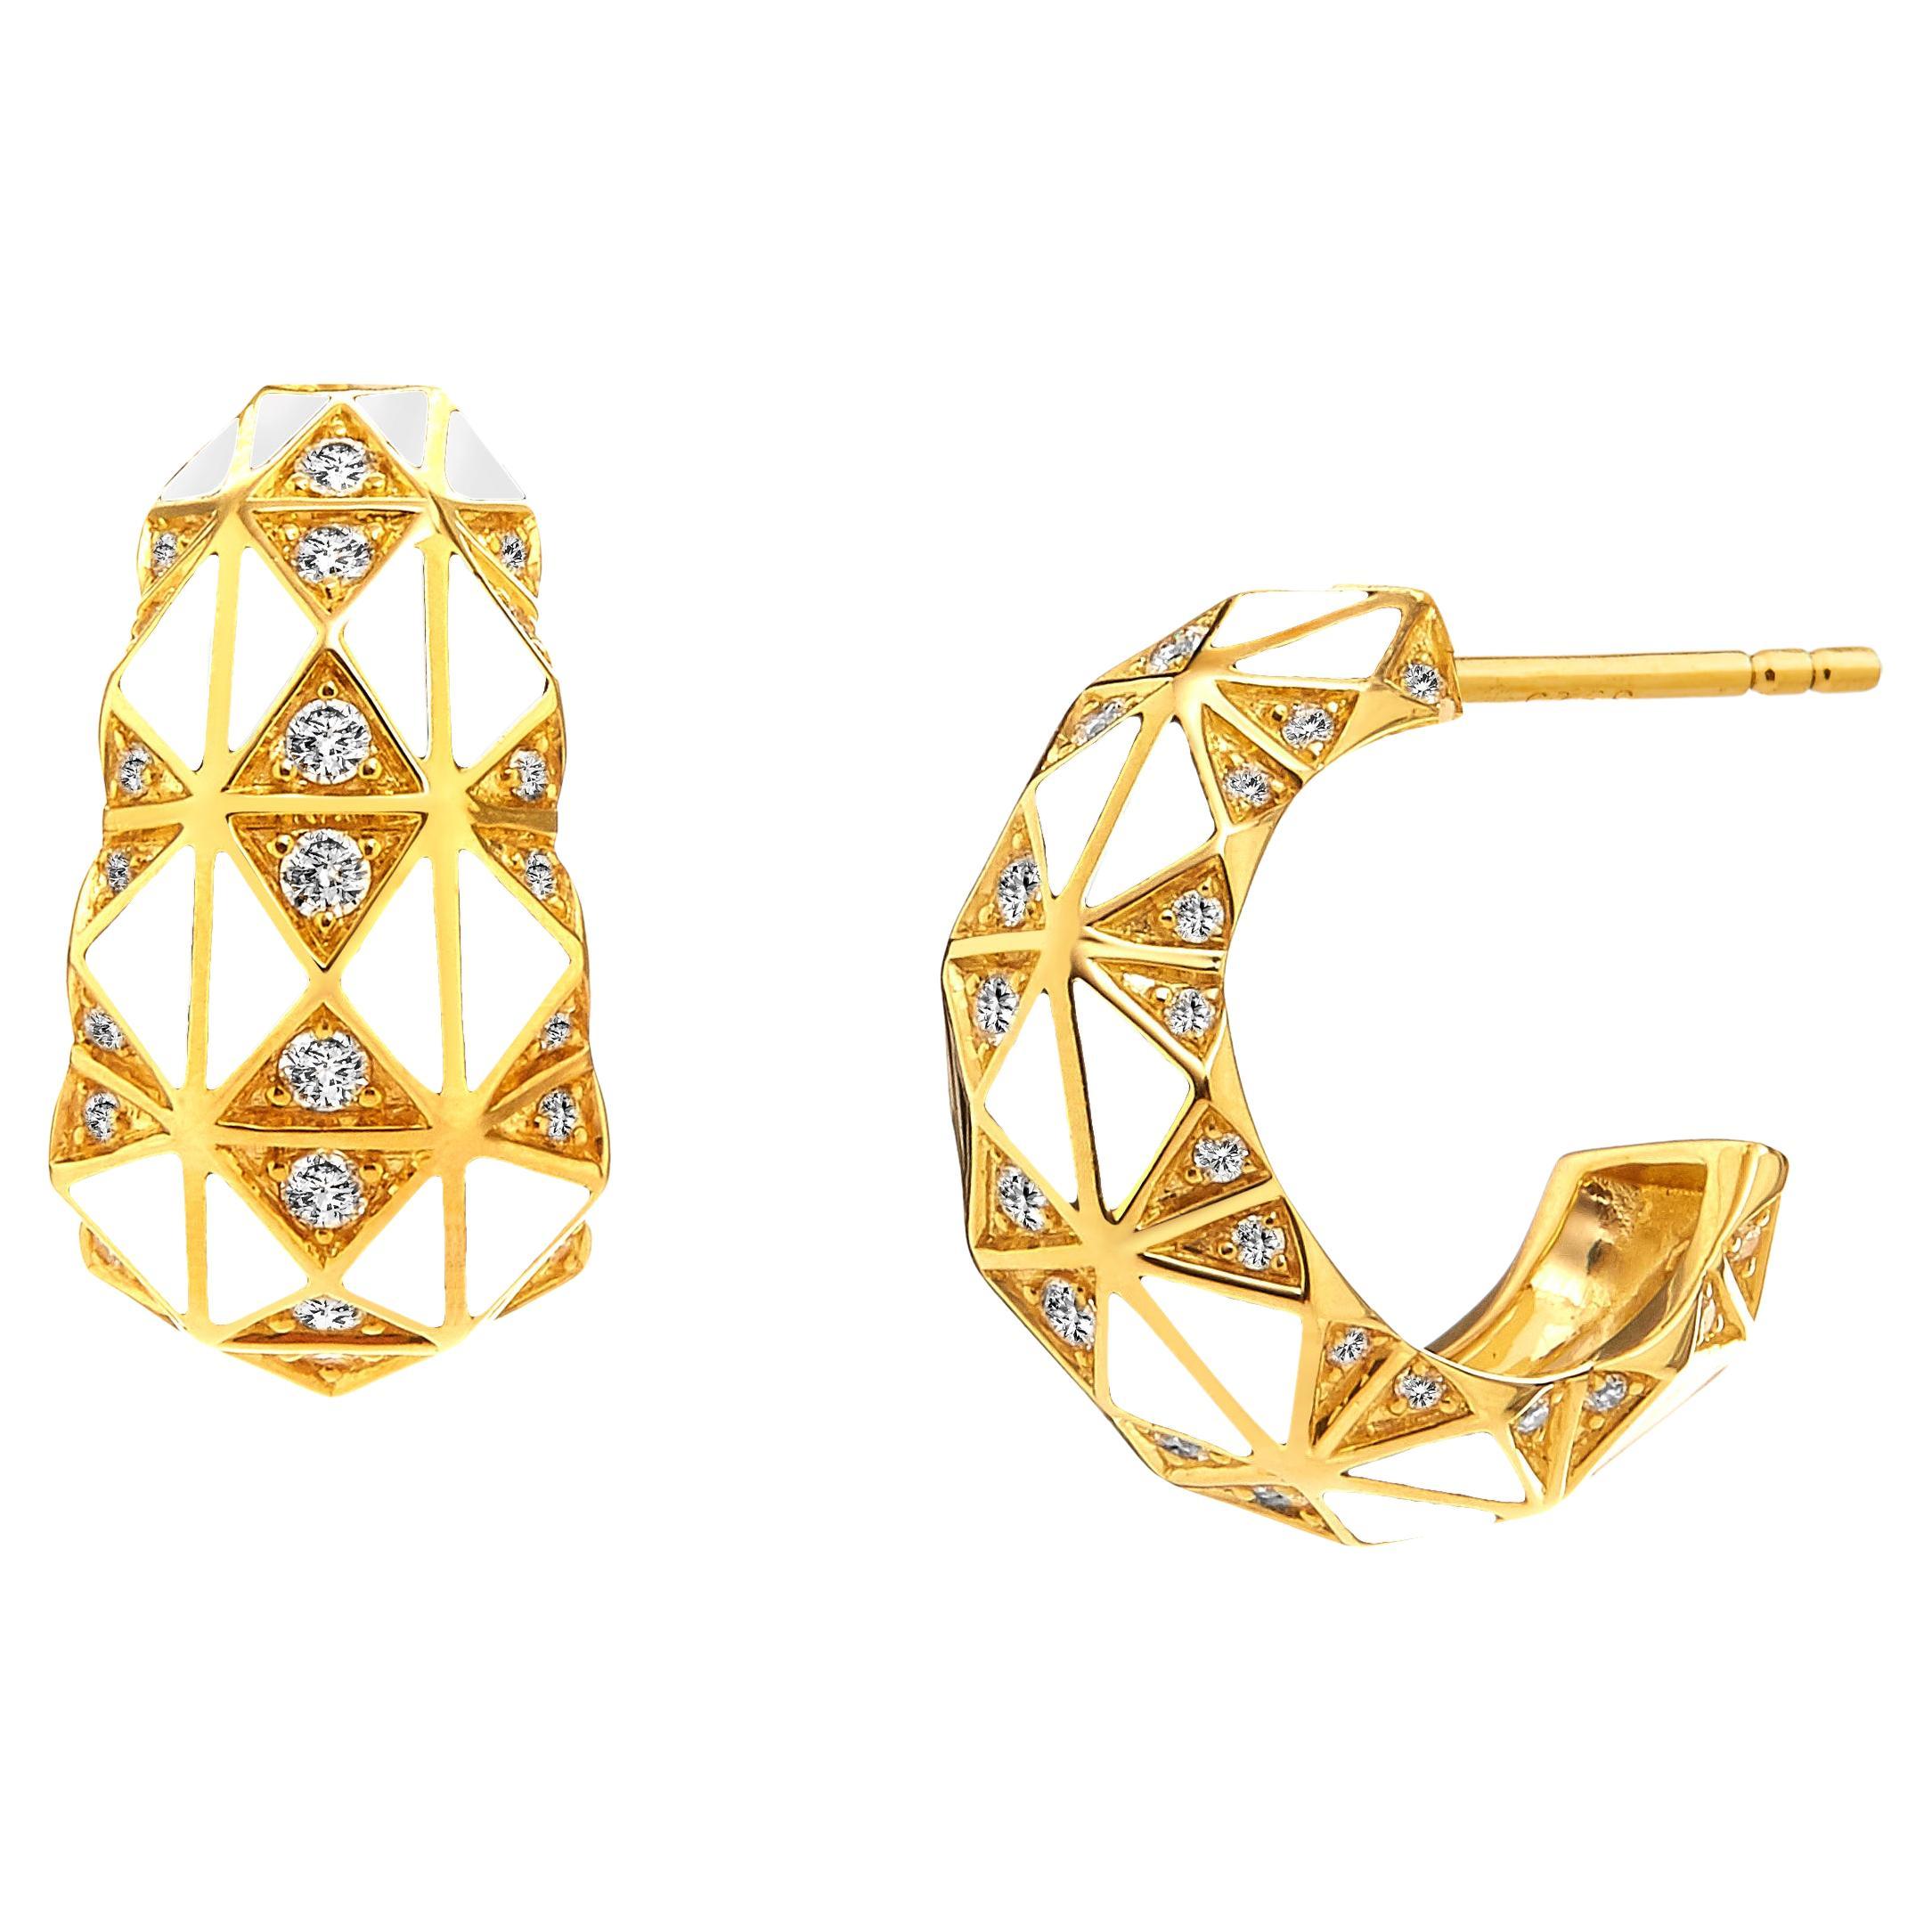 Syna-Ohrringe aus Gelbgold mit weißer Emaille und Diamanten